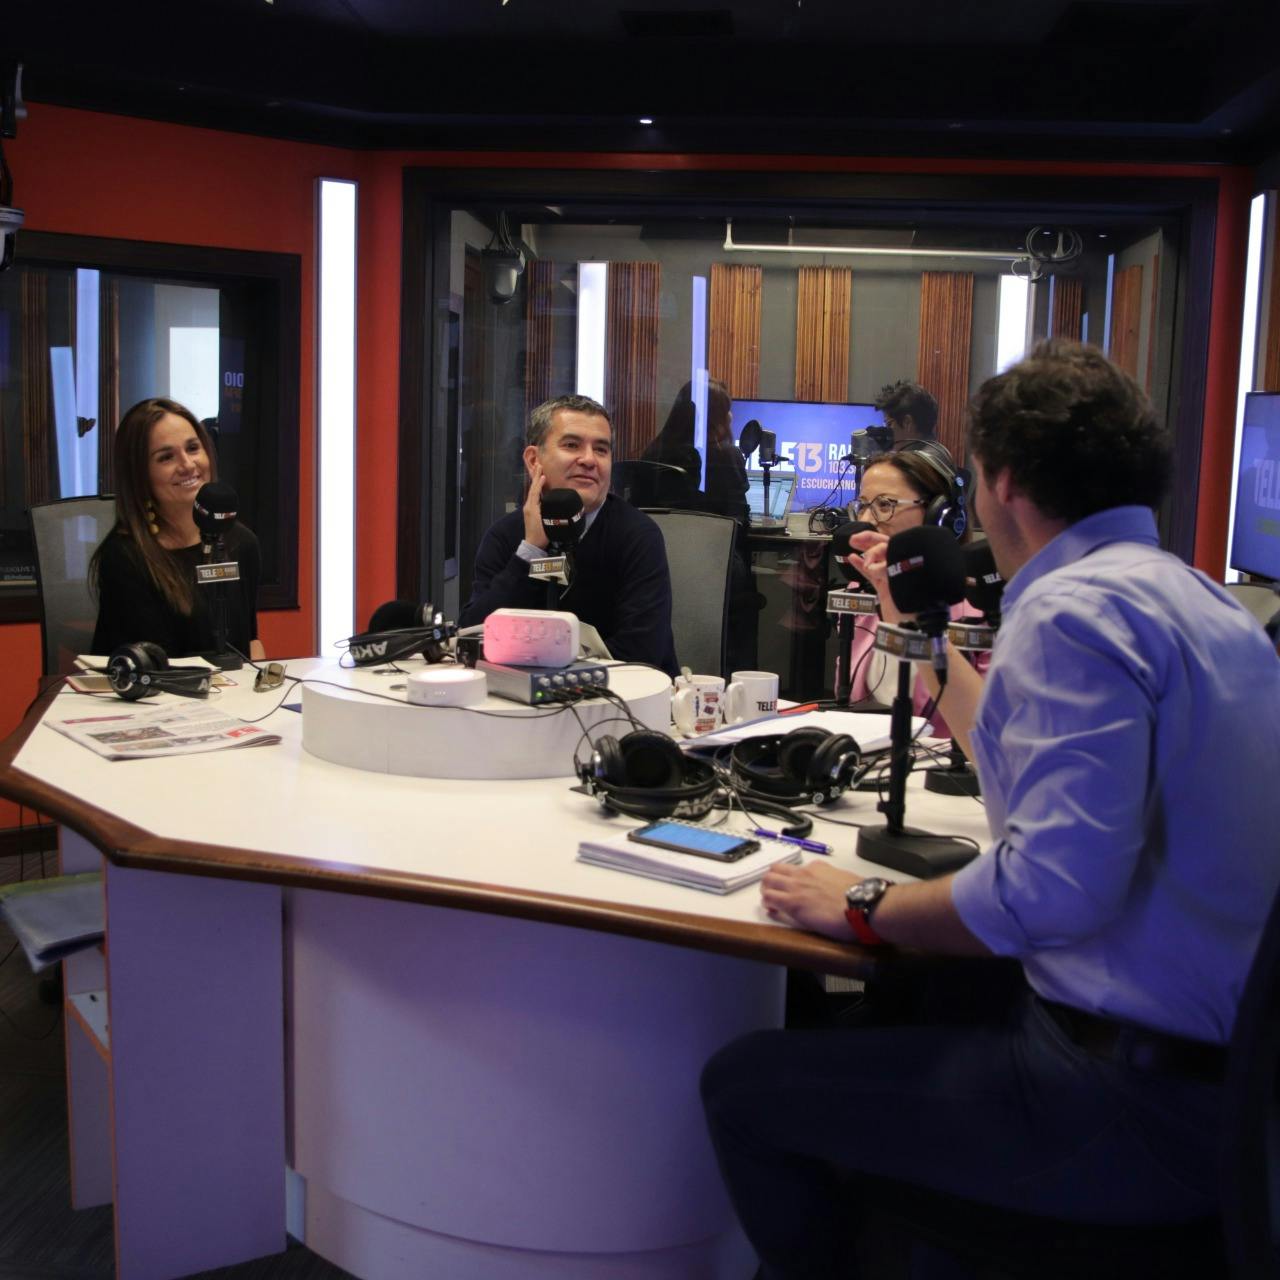 De la Fuente, Barchiesi y Mujica conversan sobre la acusación constitucional contra la ministra Cubillos - Emisor Podcasting